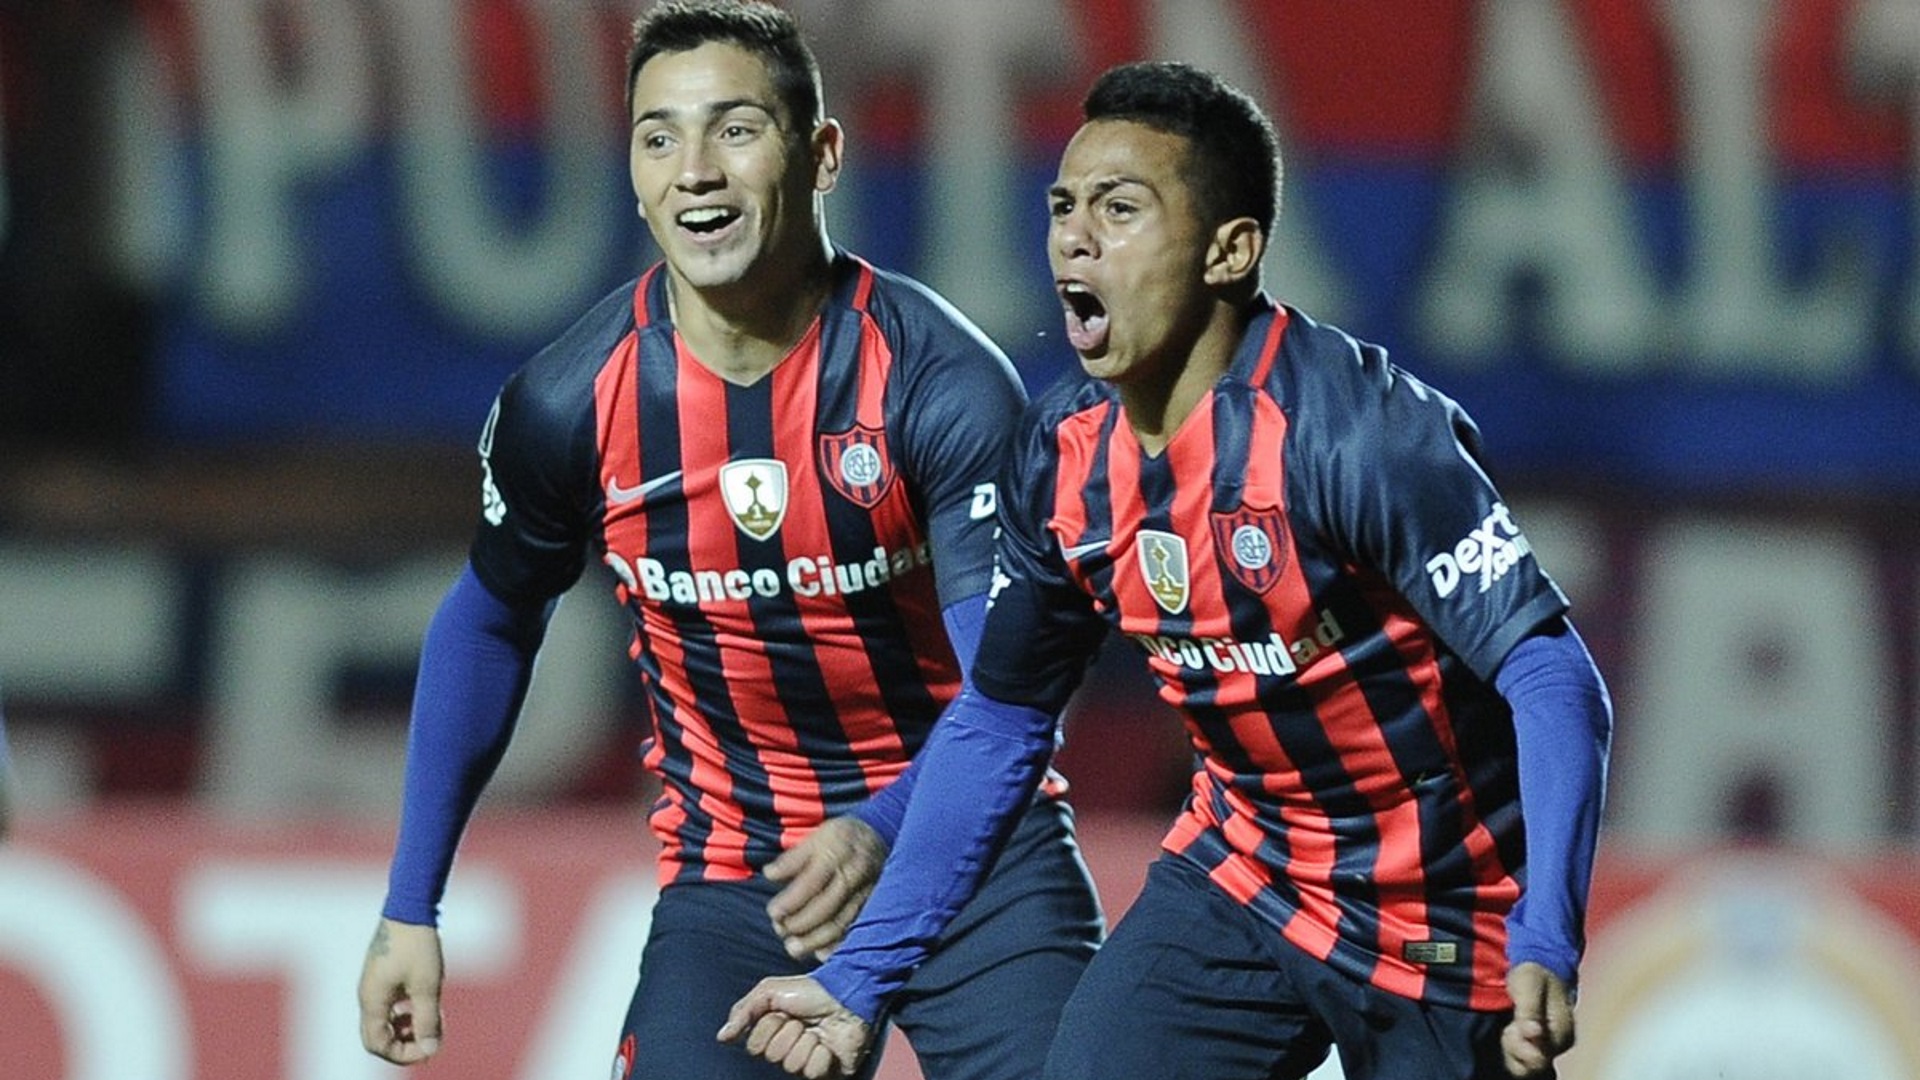 El Perrito Nahuel Barrios gritando un gol con la camiseta de San Lorenzo (@SC_ESPN)